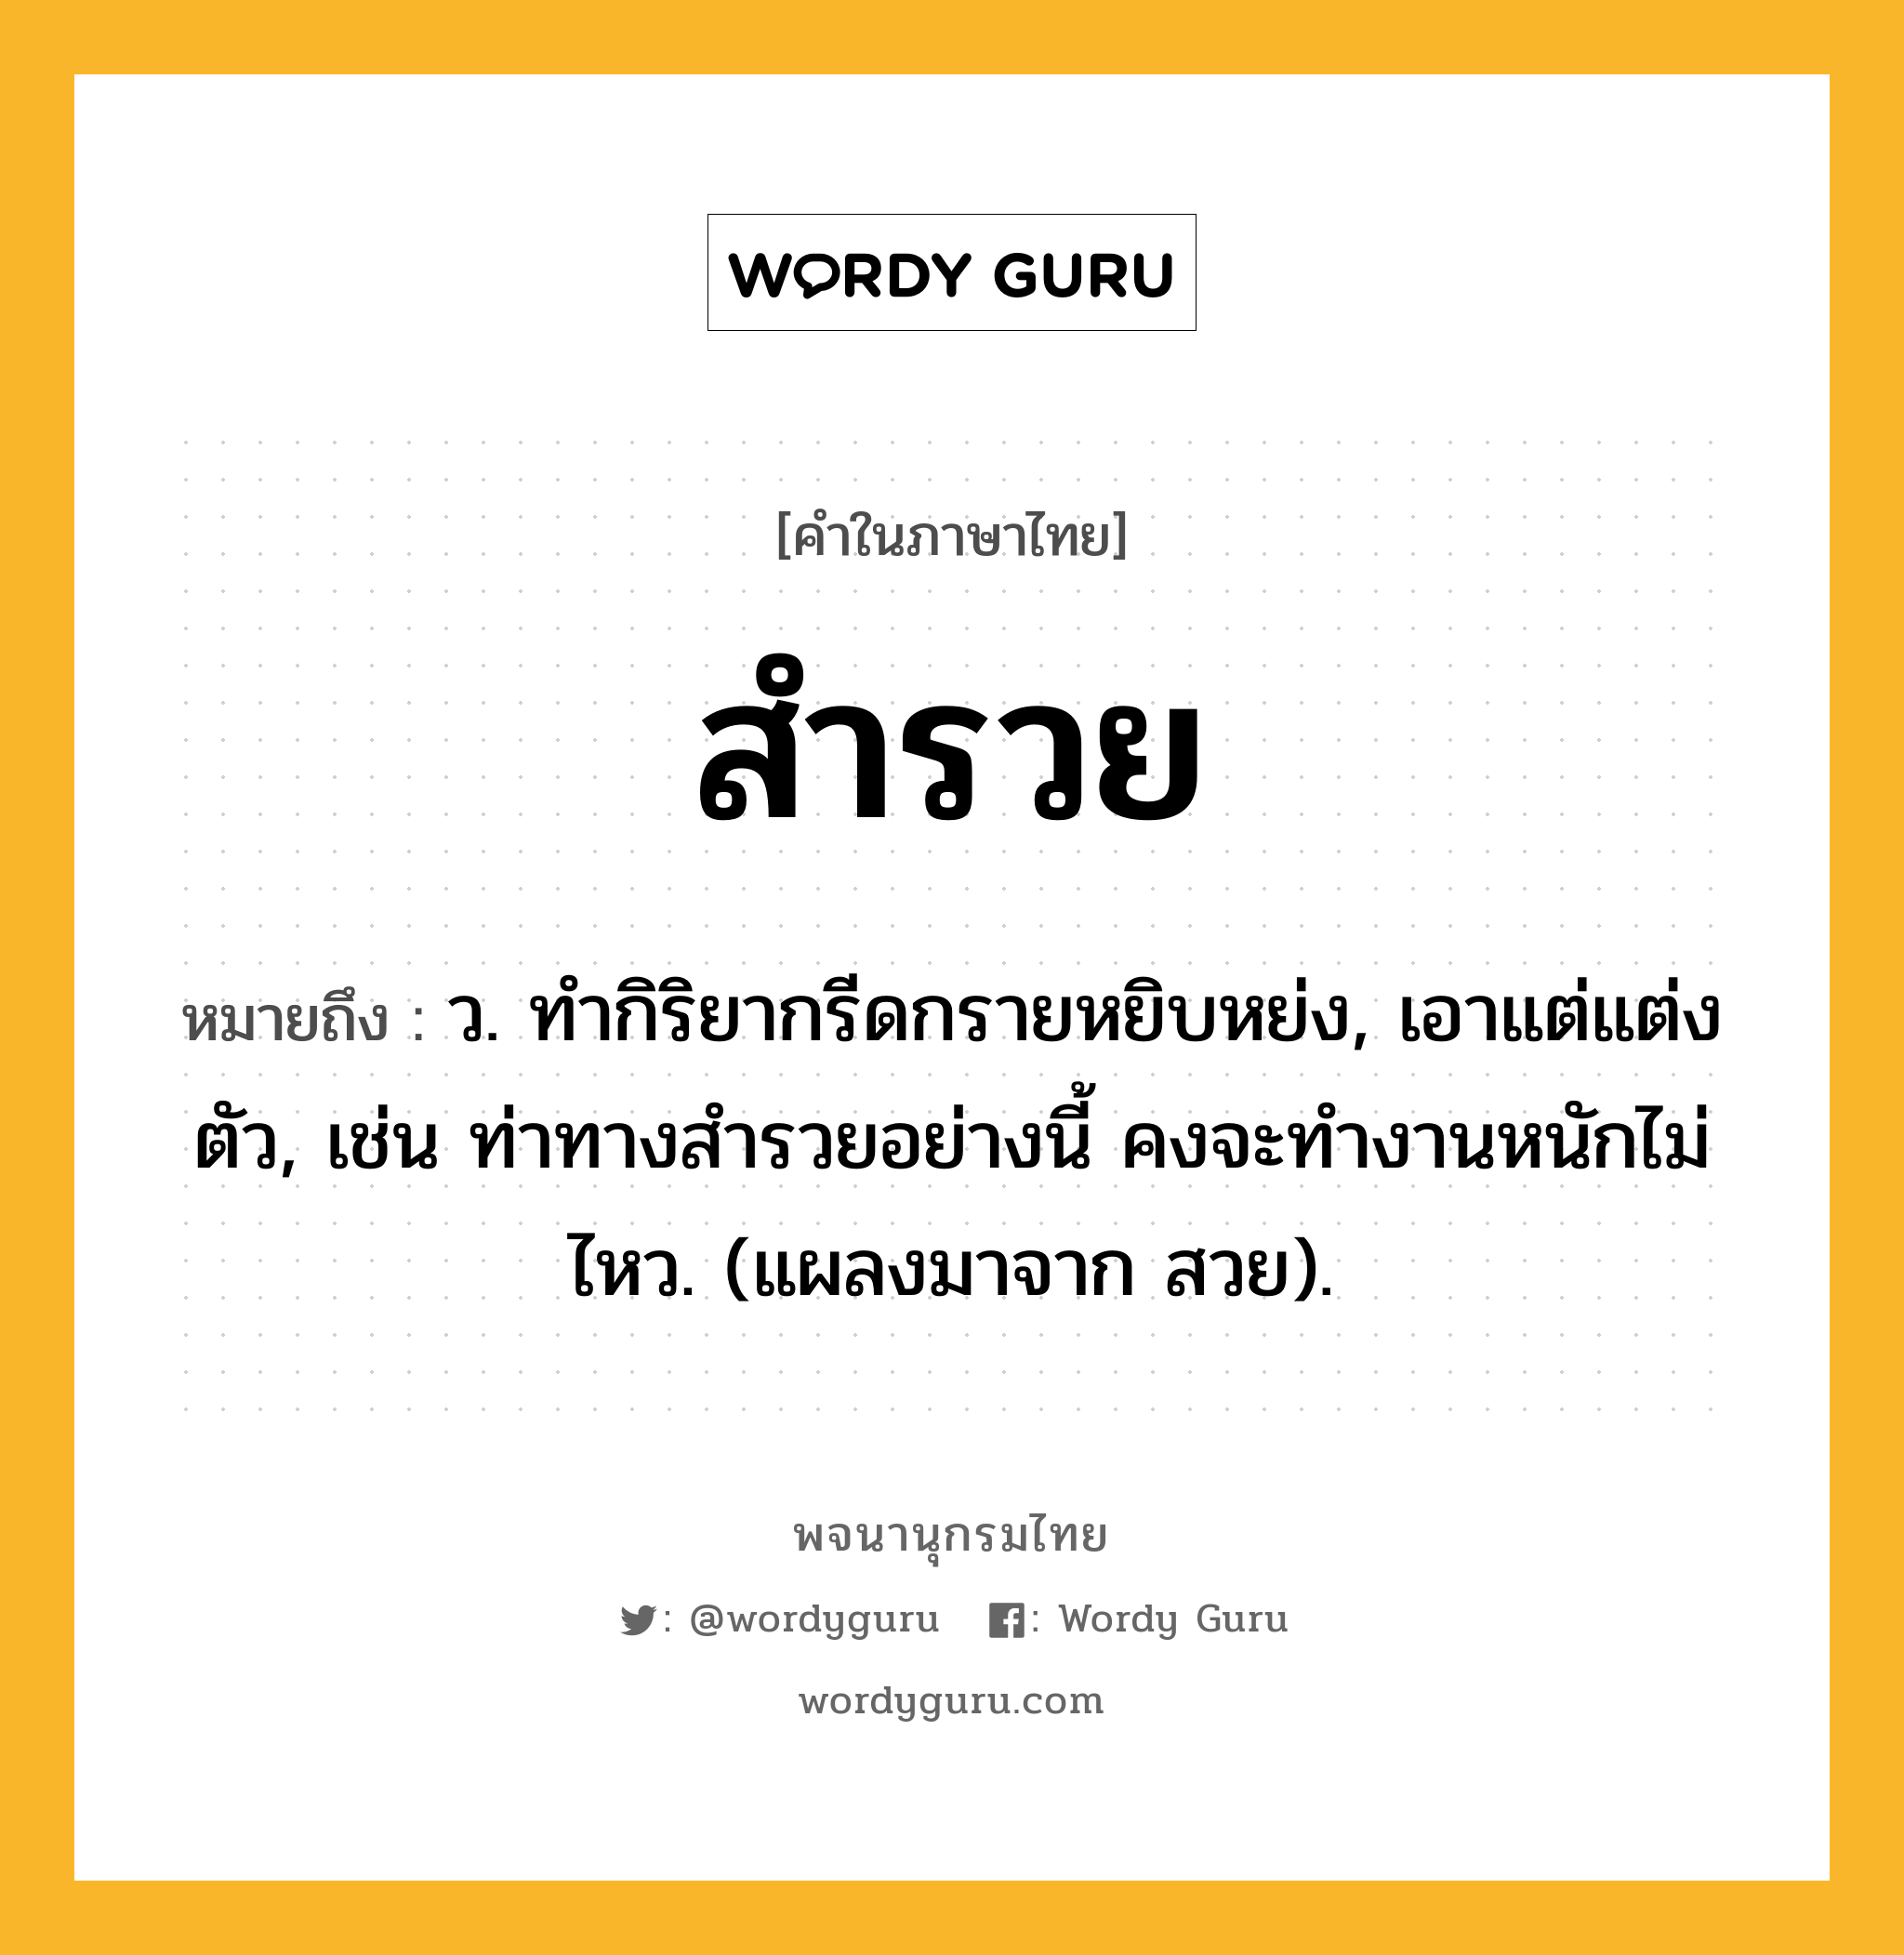 สำรวย หมายถึงอะไร?, คำในภาษาไทย สำรวย หมายถึง ว. ทํากิริยากรีดกรายหยิบหย่ง, เอาแต่แต่งตัว, เช่น ท่าทางสำรวยอย่างนี้ คงจะทำงานหนักไม่ไหว. (แผลงมาจาก สวย).